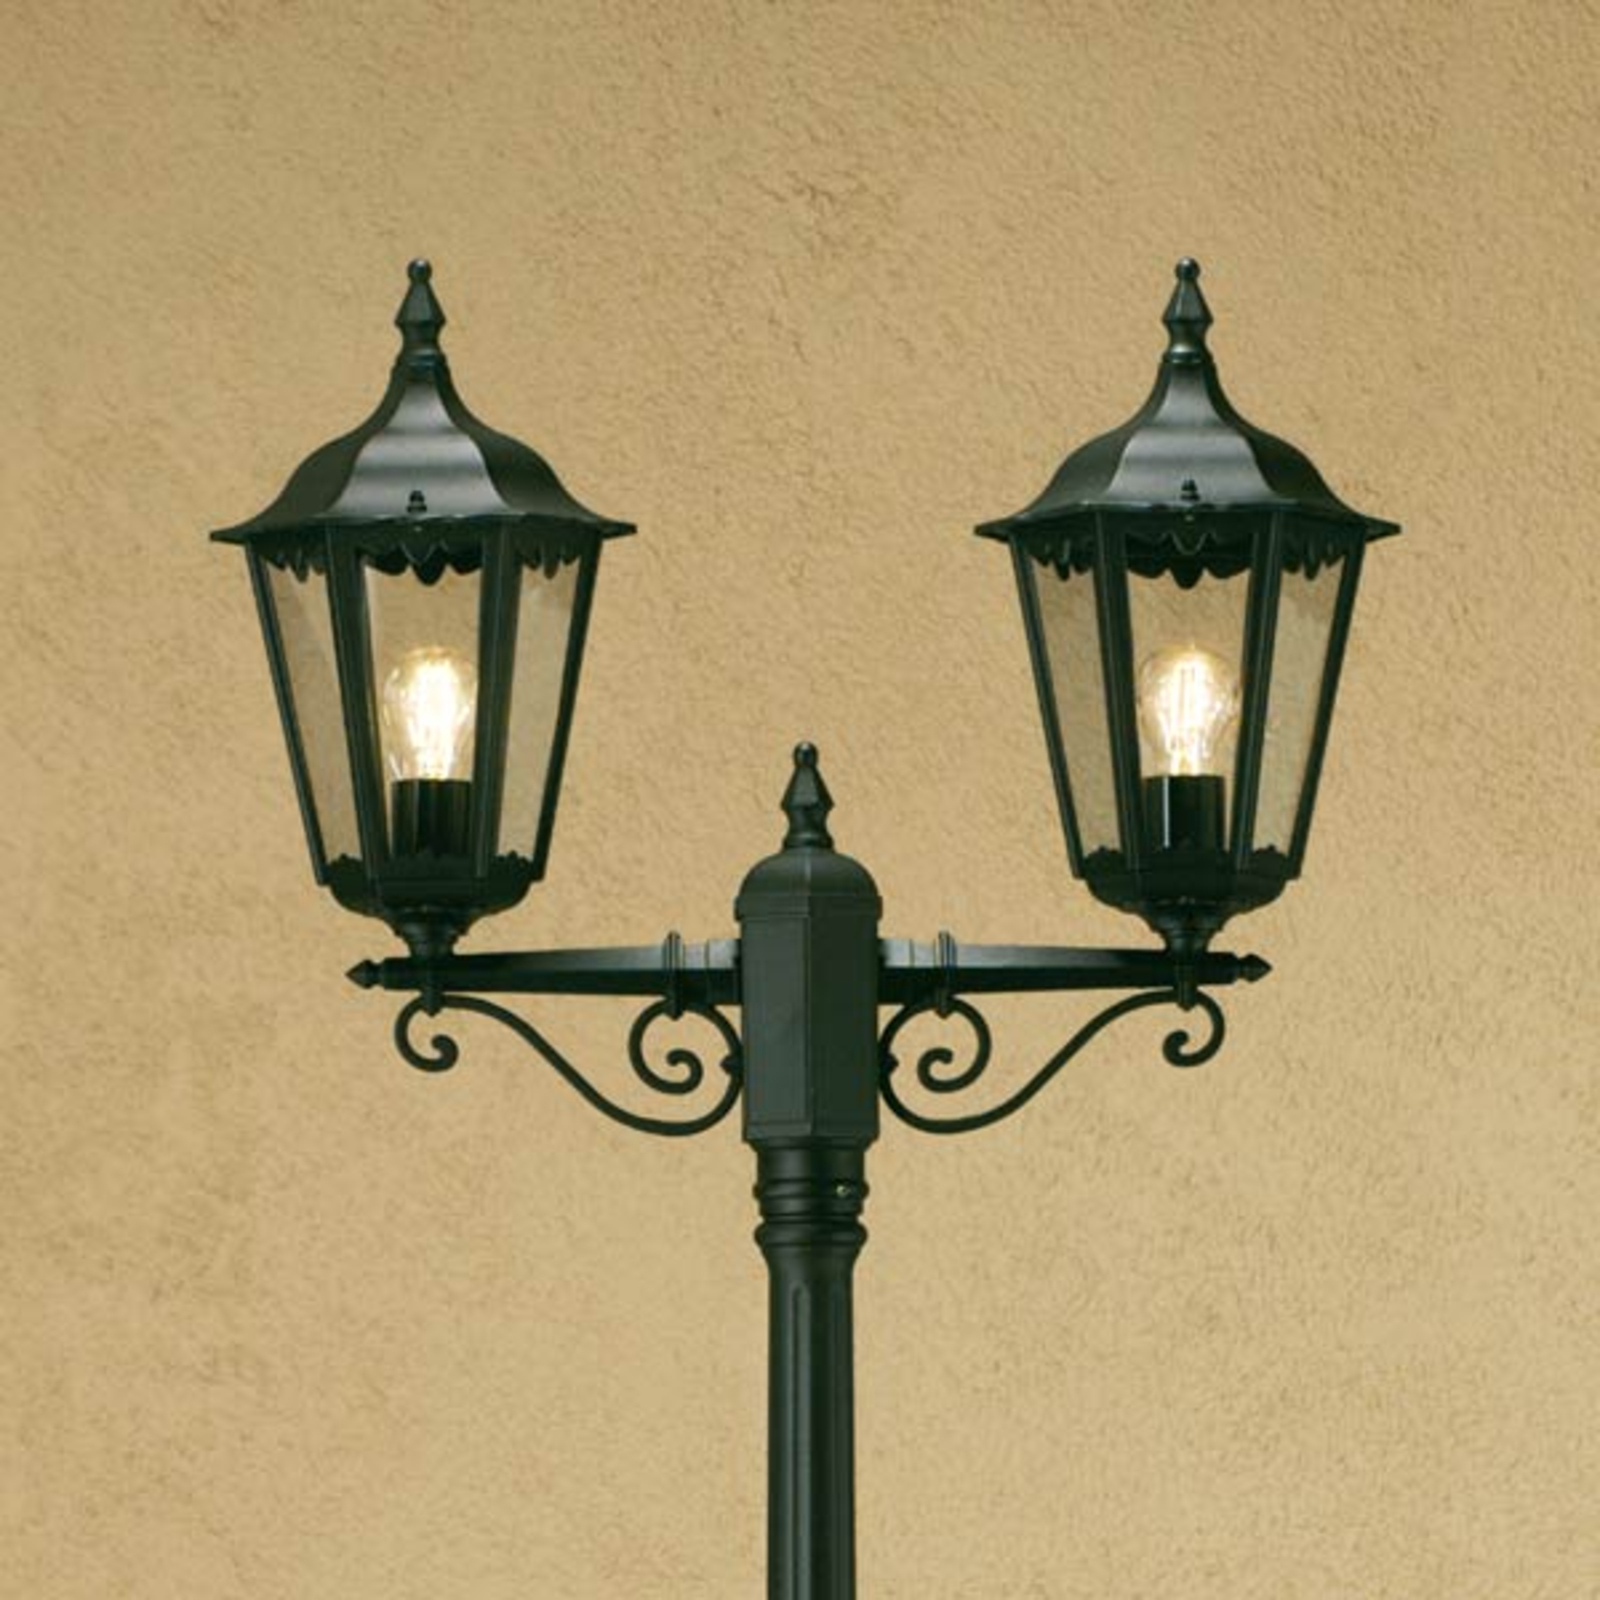 Firenze lamp post, 2-bulb, green